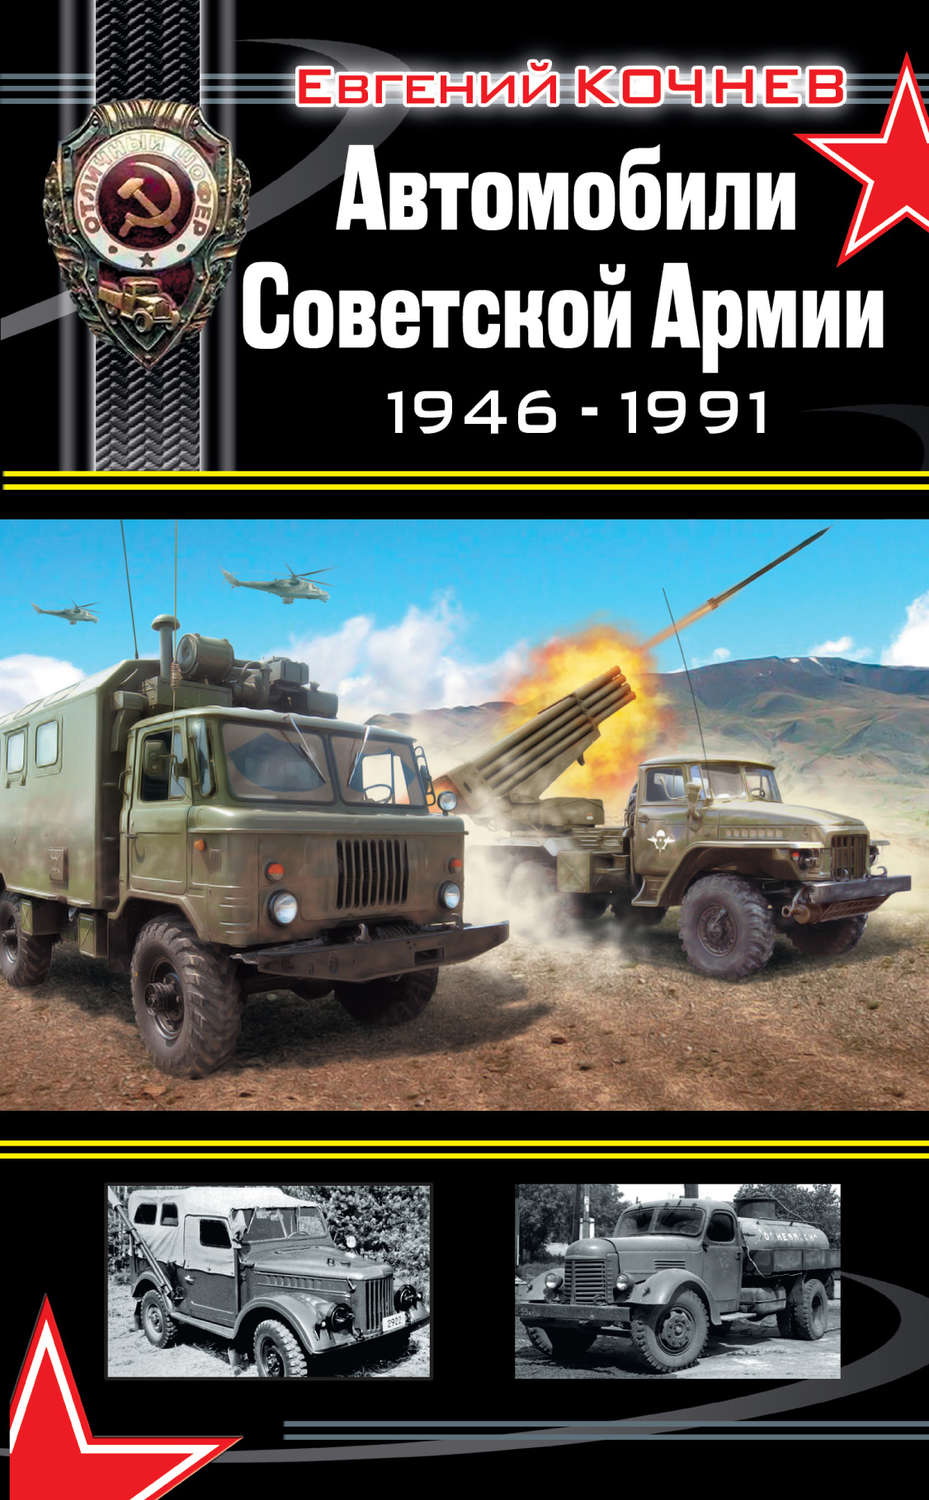 Кочнев автомобили Советской армии 1946 1991